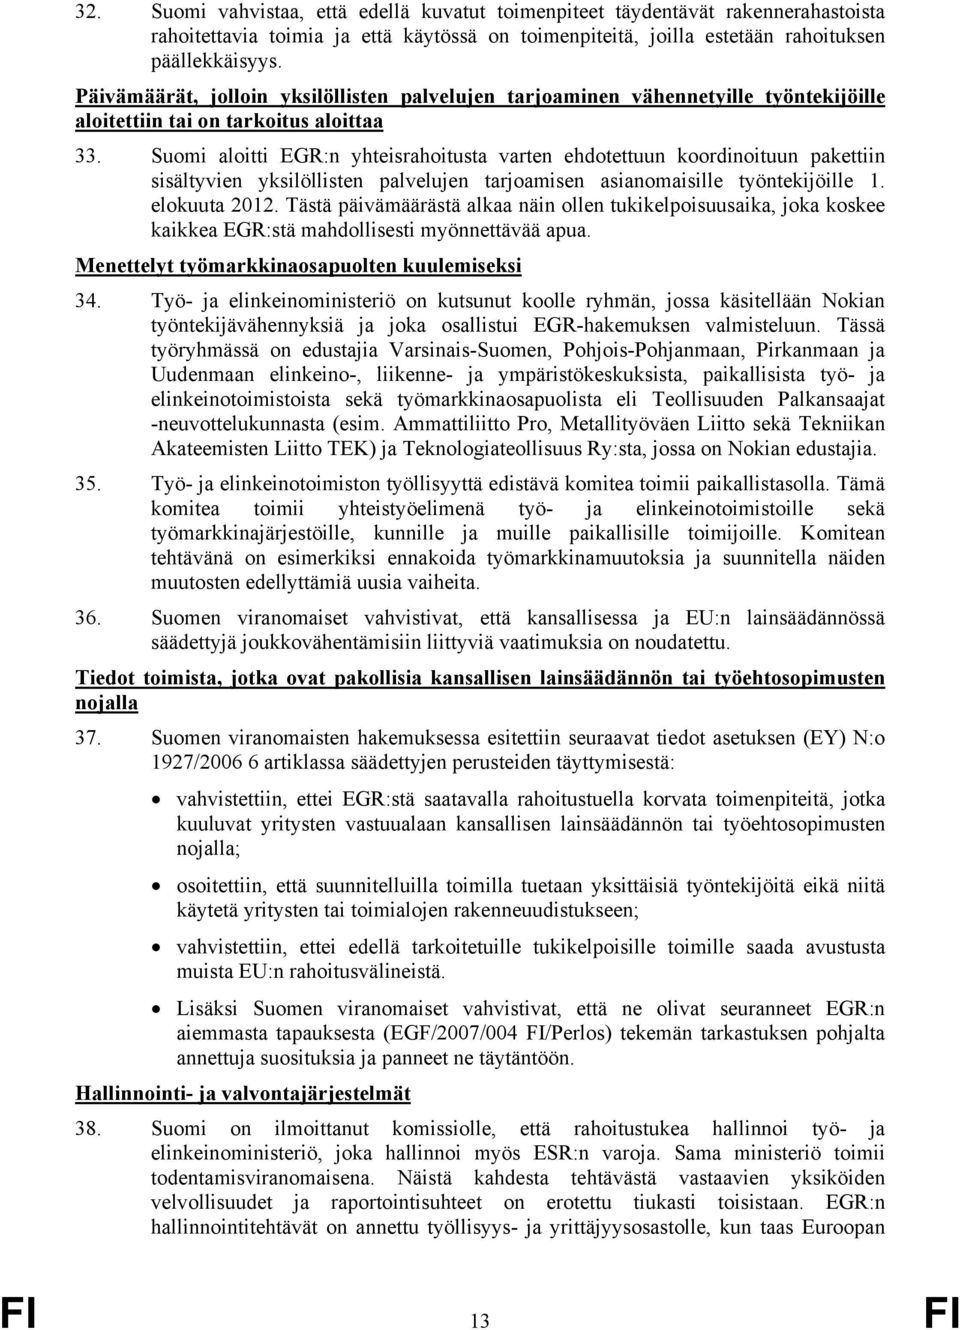 Suomi aloitti EGR:n yhteisrahoitusta varten ehdotettuun koordinoituun pakettiin sisältyvien yksilöllisten palvelujen tarjoamisen asianomaisille työntekijöille 1. elokuuta 2012.